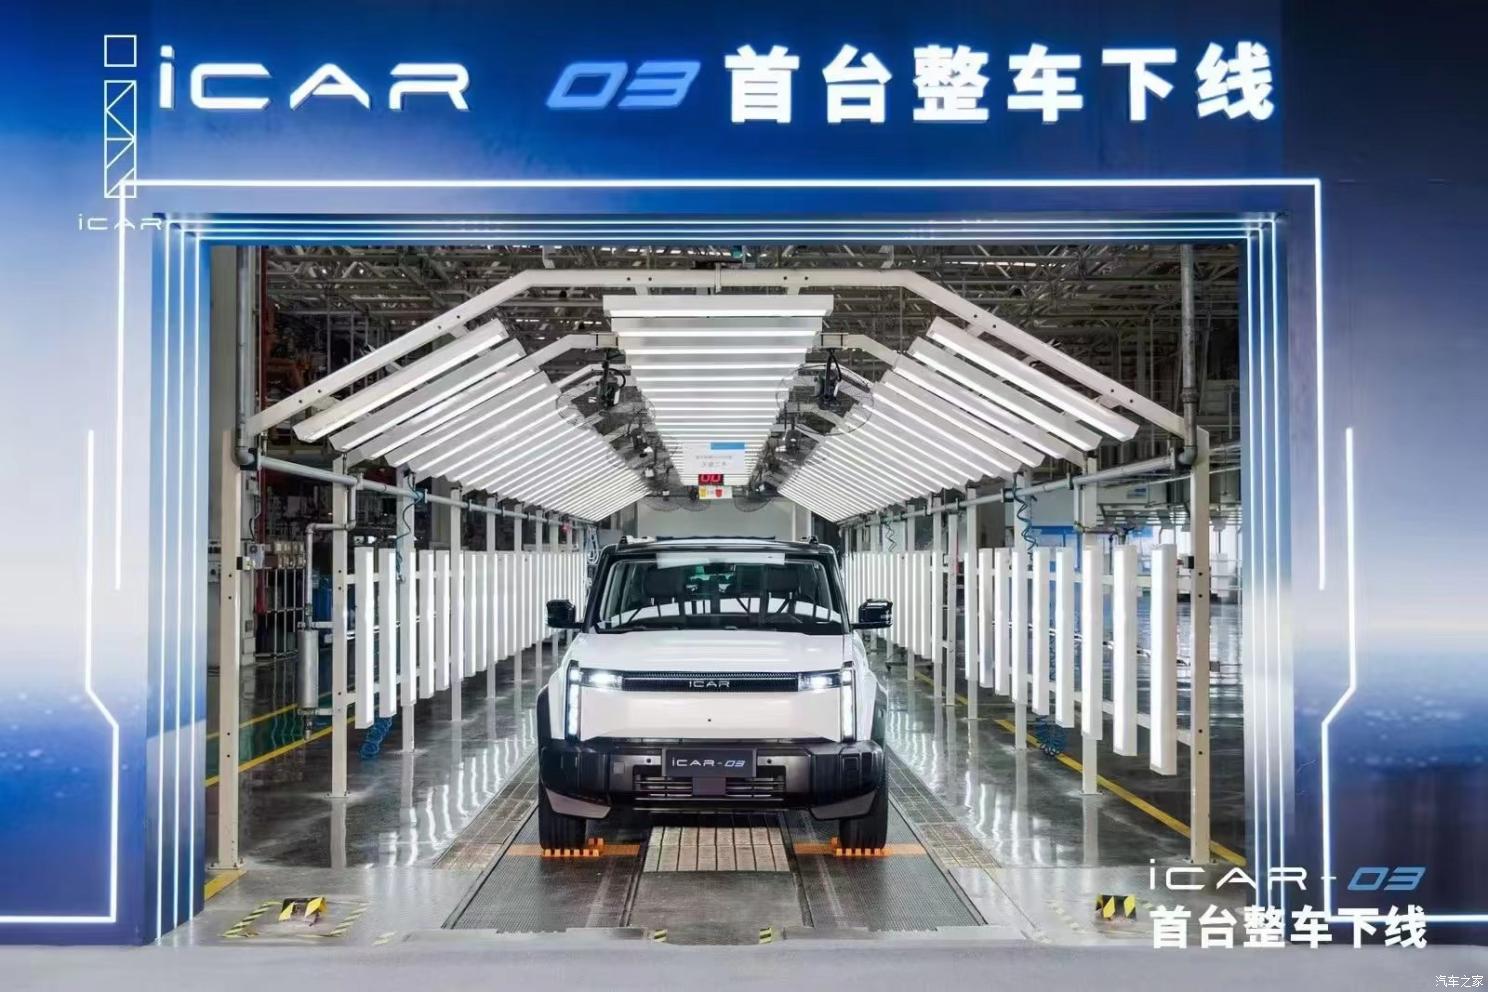 شبكة السيارات الصينية – السيارة الكهربائية المتطورة شيري iCar 03 تخرج من خطوط الإنتاج رسميًا والتسليم في الربع الأخير من 2023م